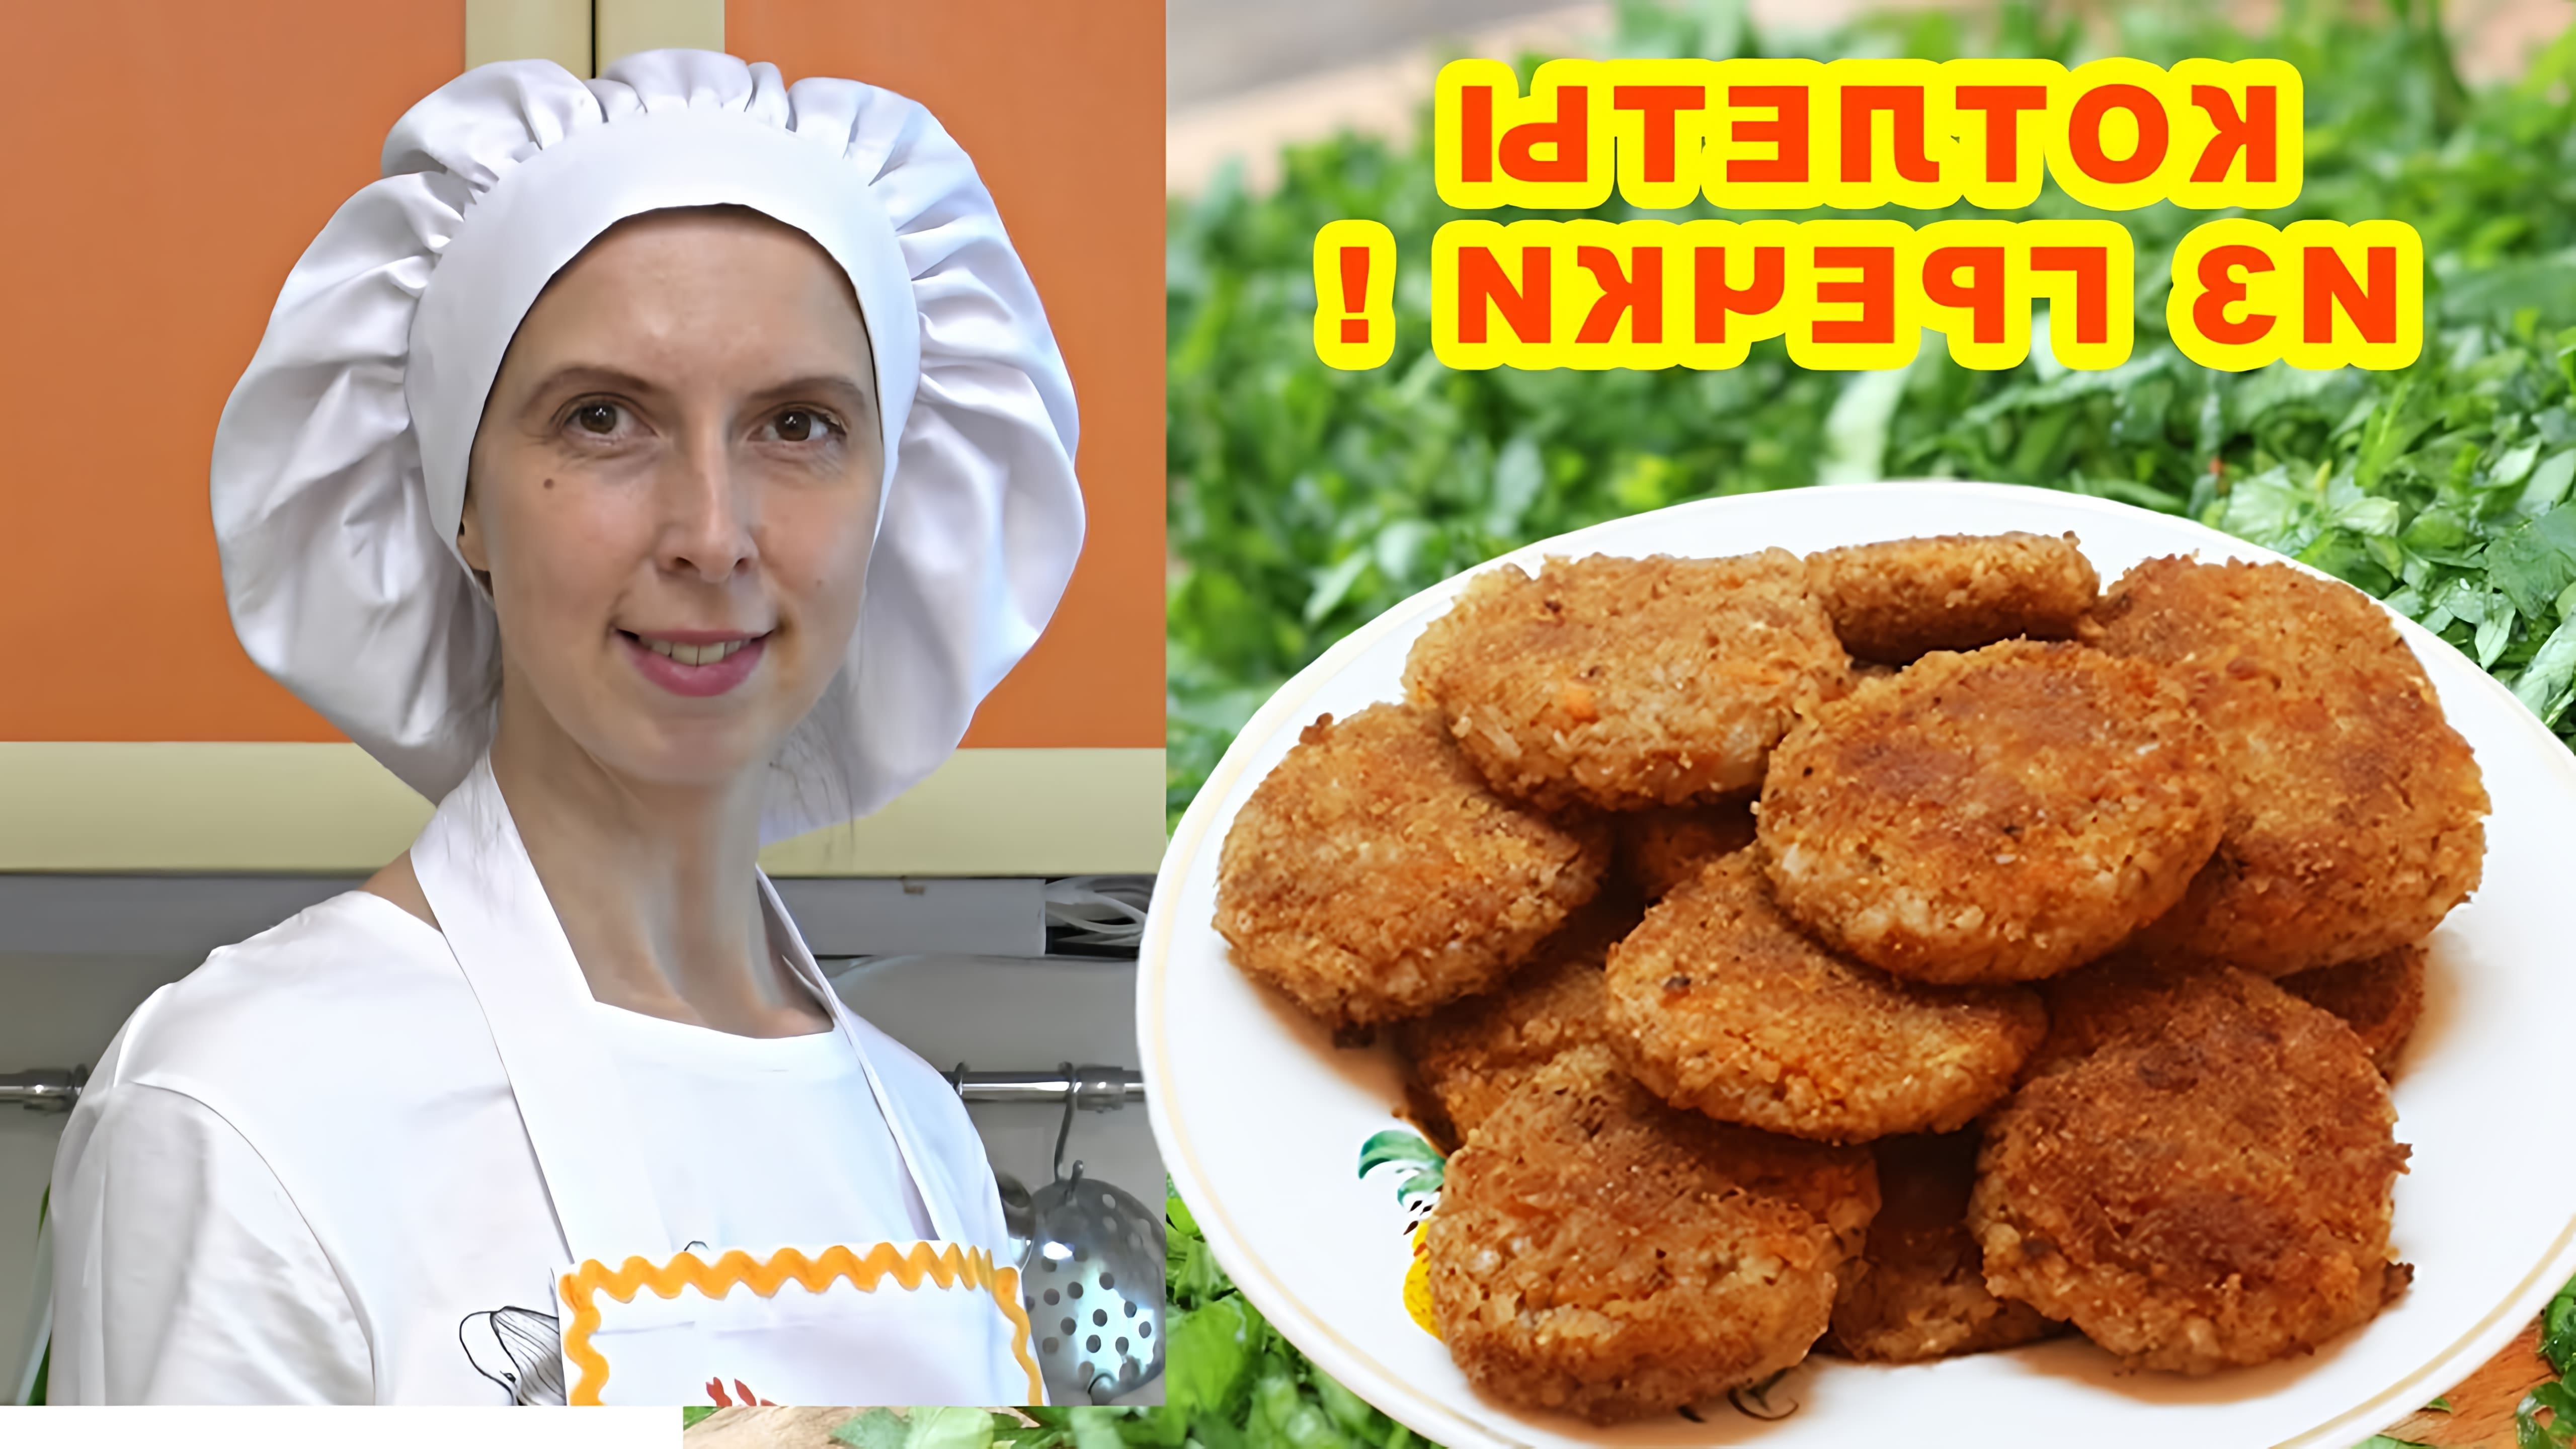 В этом видео-ролике будет показан рецепт приготовления котлет из гречки без использования мяса